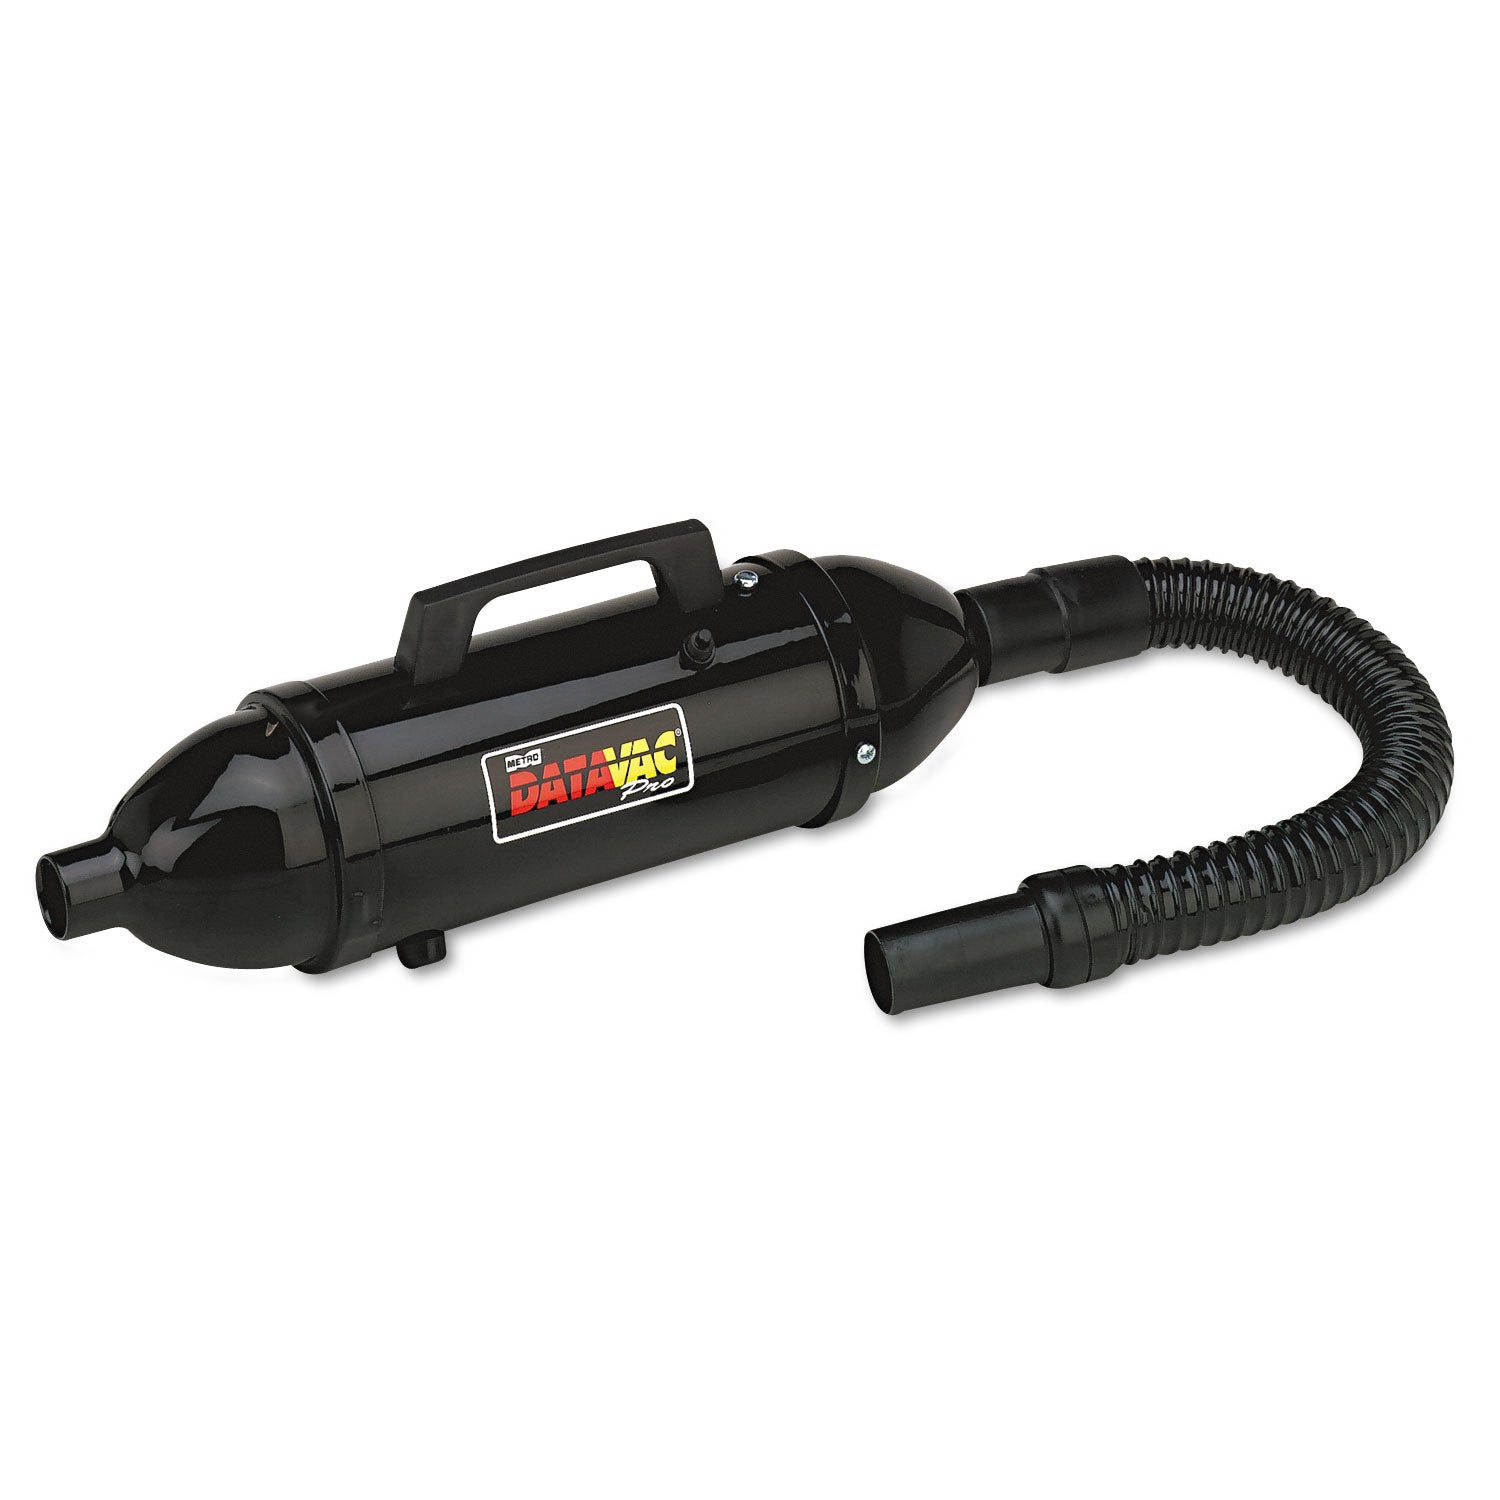 Handheld Steel Vacuum/Blower, 0.5 hp, Black - 